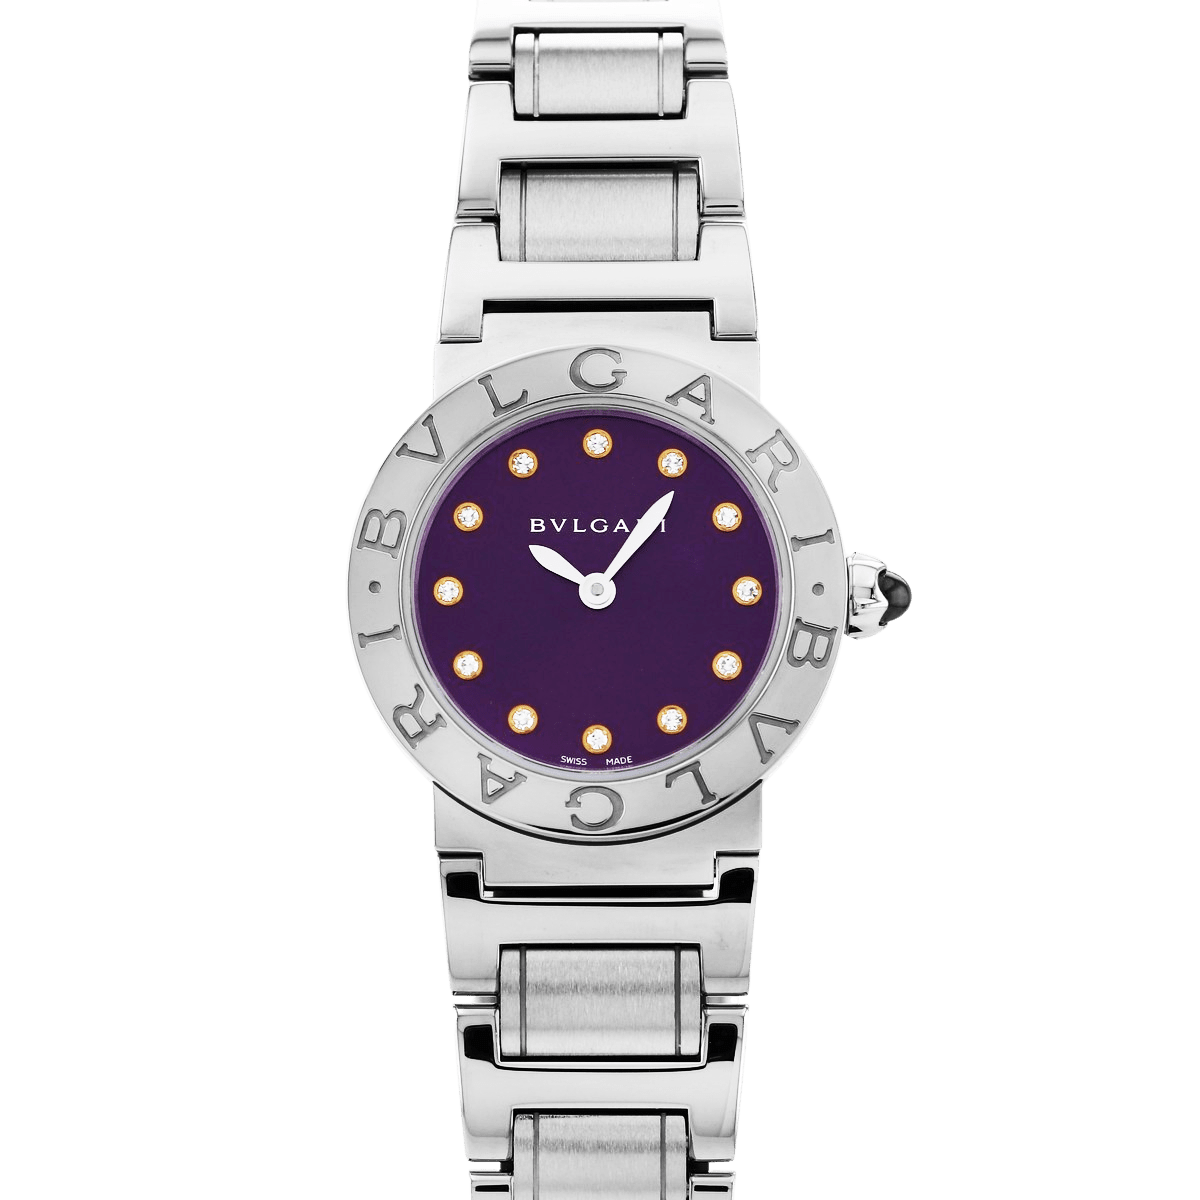 フランク・ミュラー FRANCK MULLER トノウカーベックス ベゼルダイヤ 1752QZDOPIN ピンク文字盤 新古品 腕時計 レディース -  ブランド腕時計